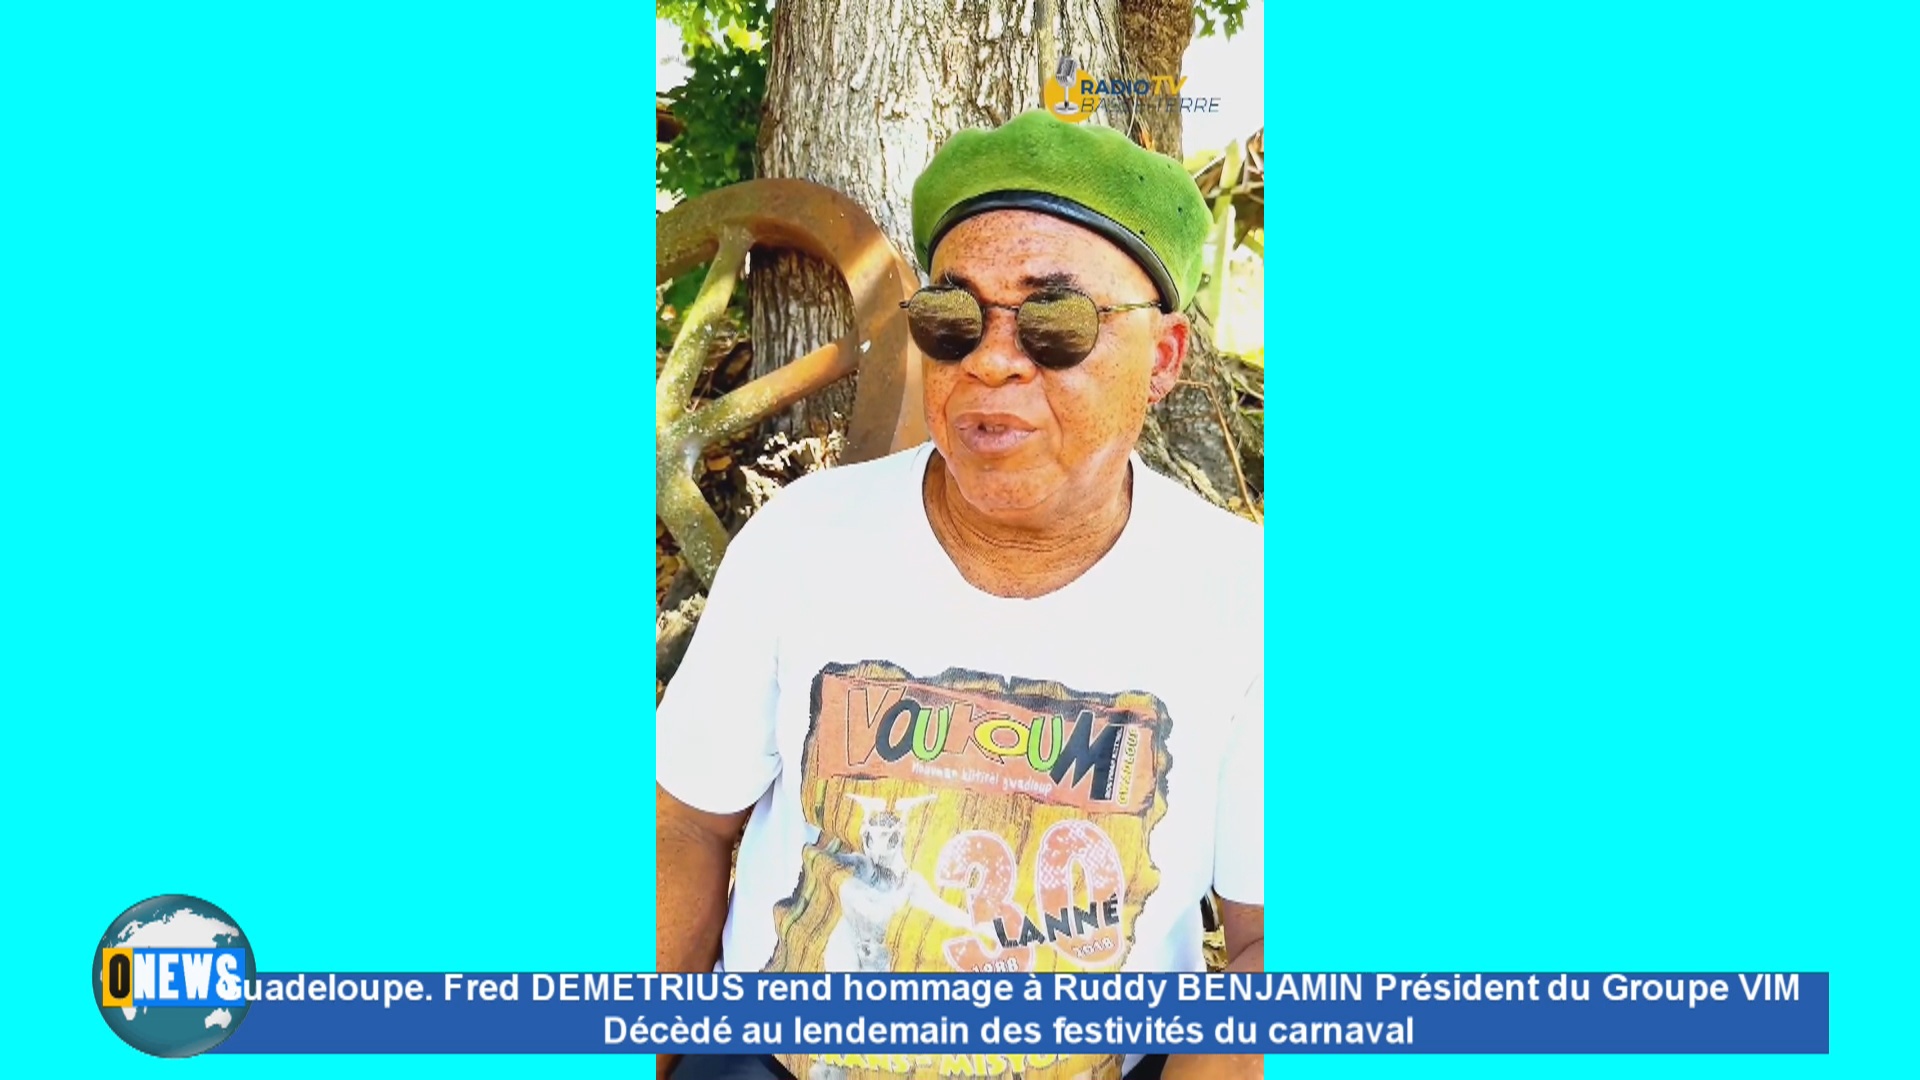 Guadeloupe. Fred DEMETRIUS de VOUKOUM rend hommage à Ruddy BENJAMIN Président du groupe VIM décédé au lendemain du Mardi Gras